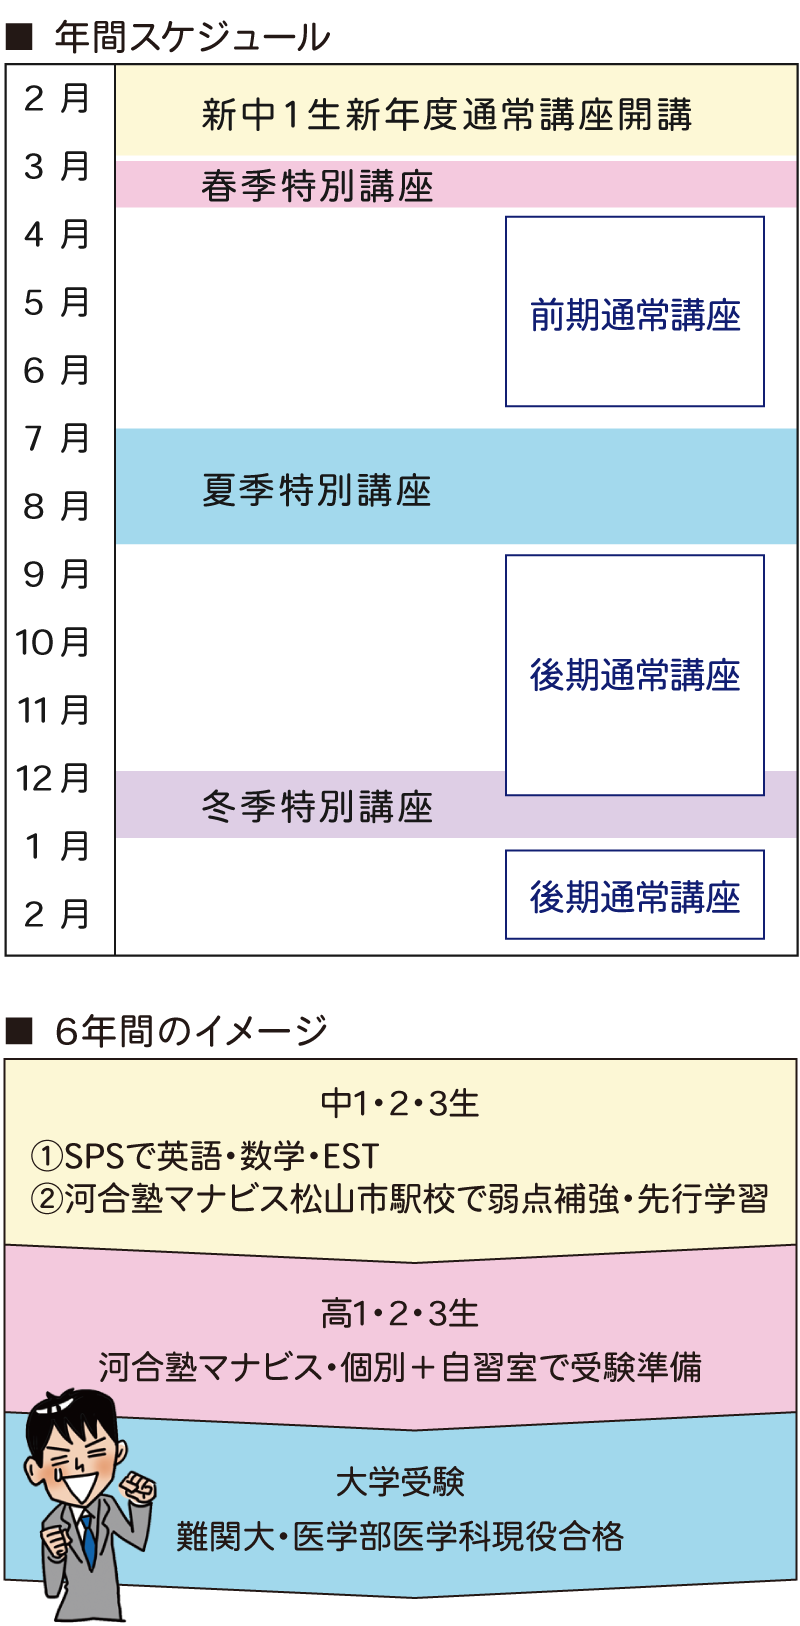 SPS愛光・SPS平成コース年間スケジュール